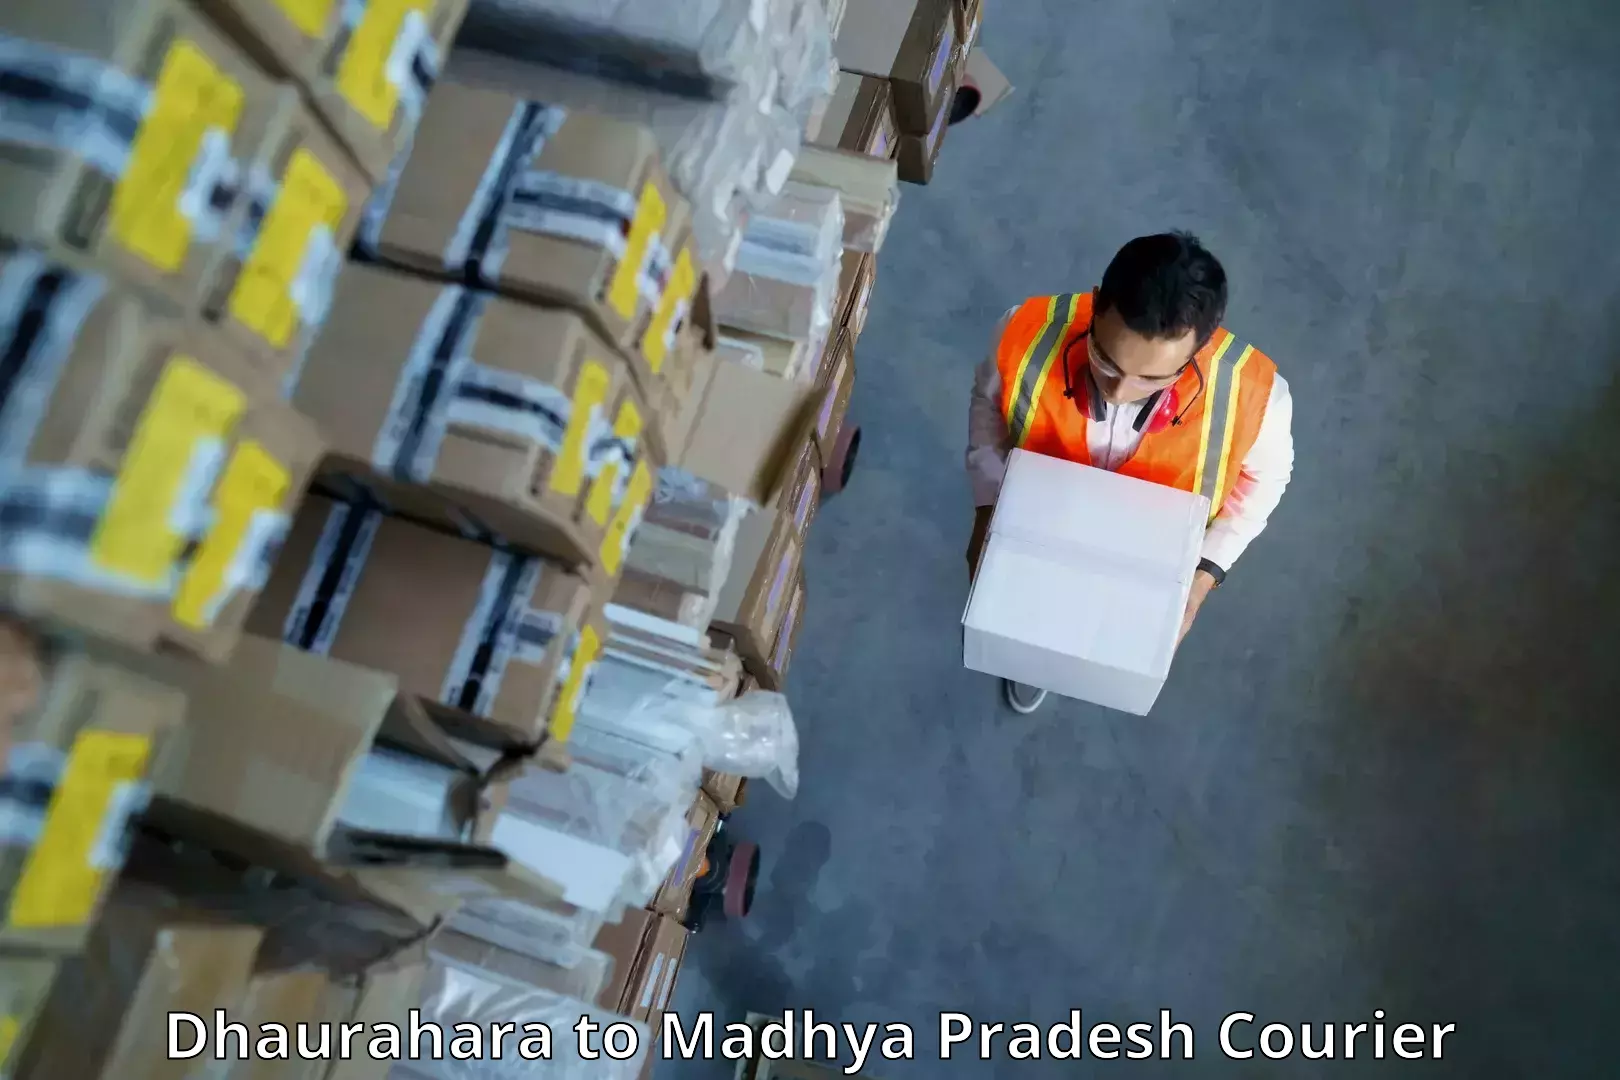 Secure freight services Dhaurahara to Agar